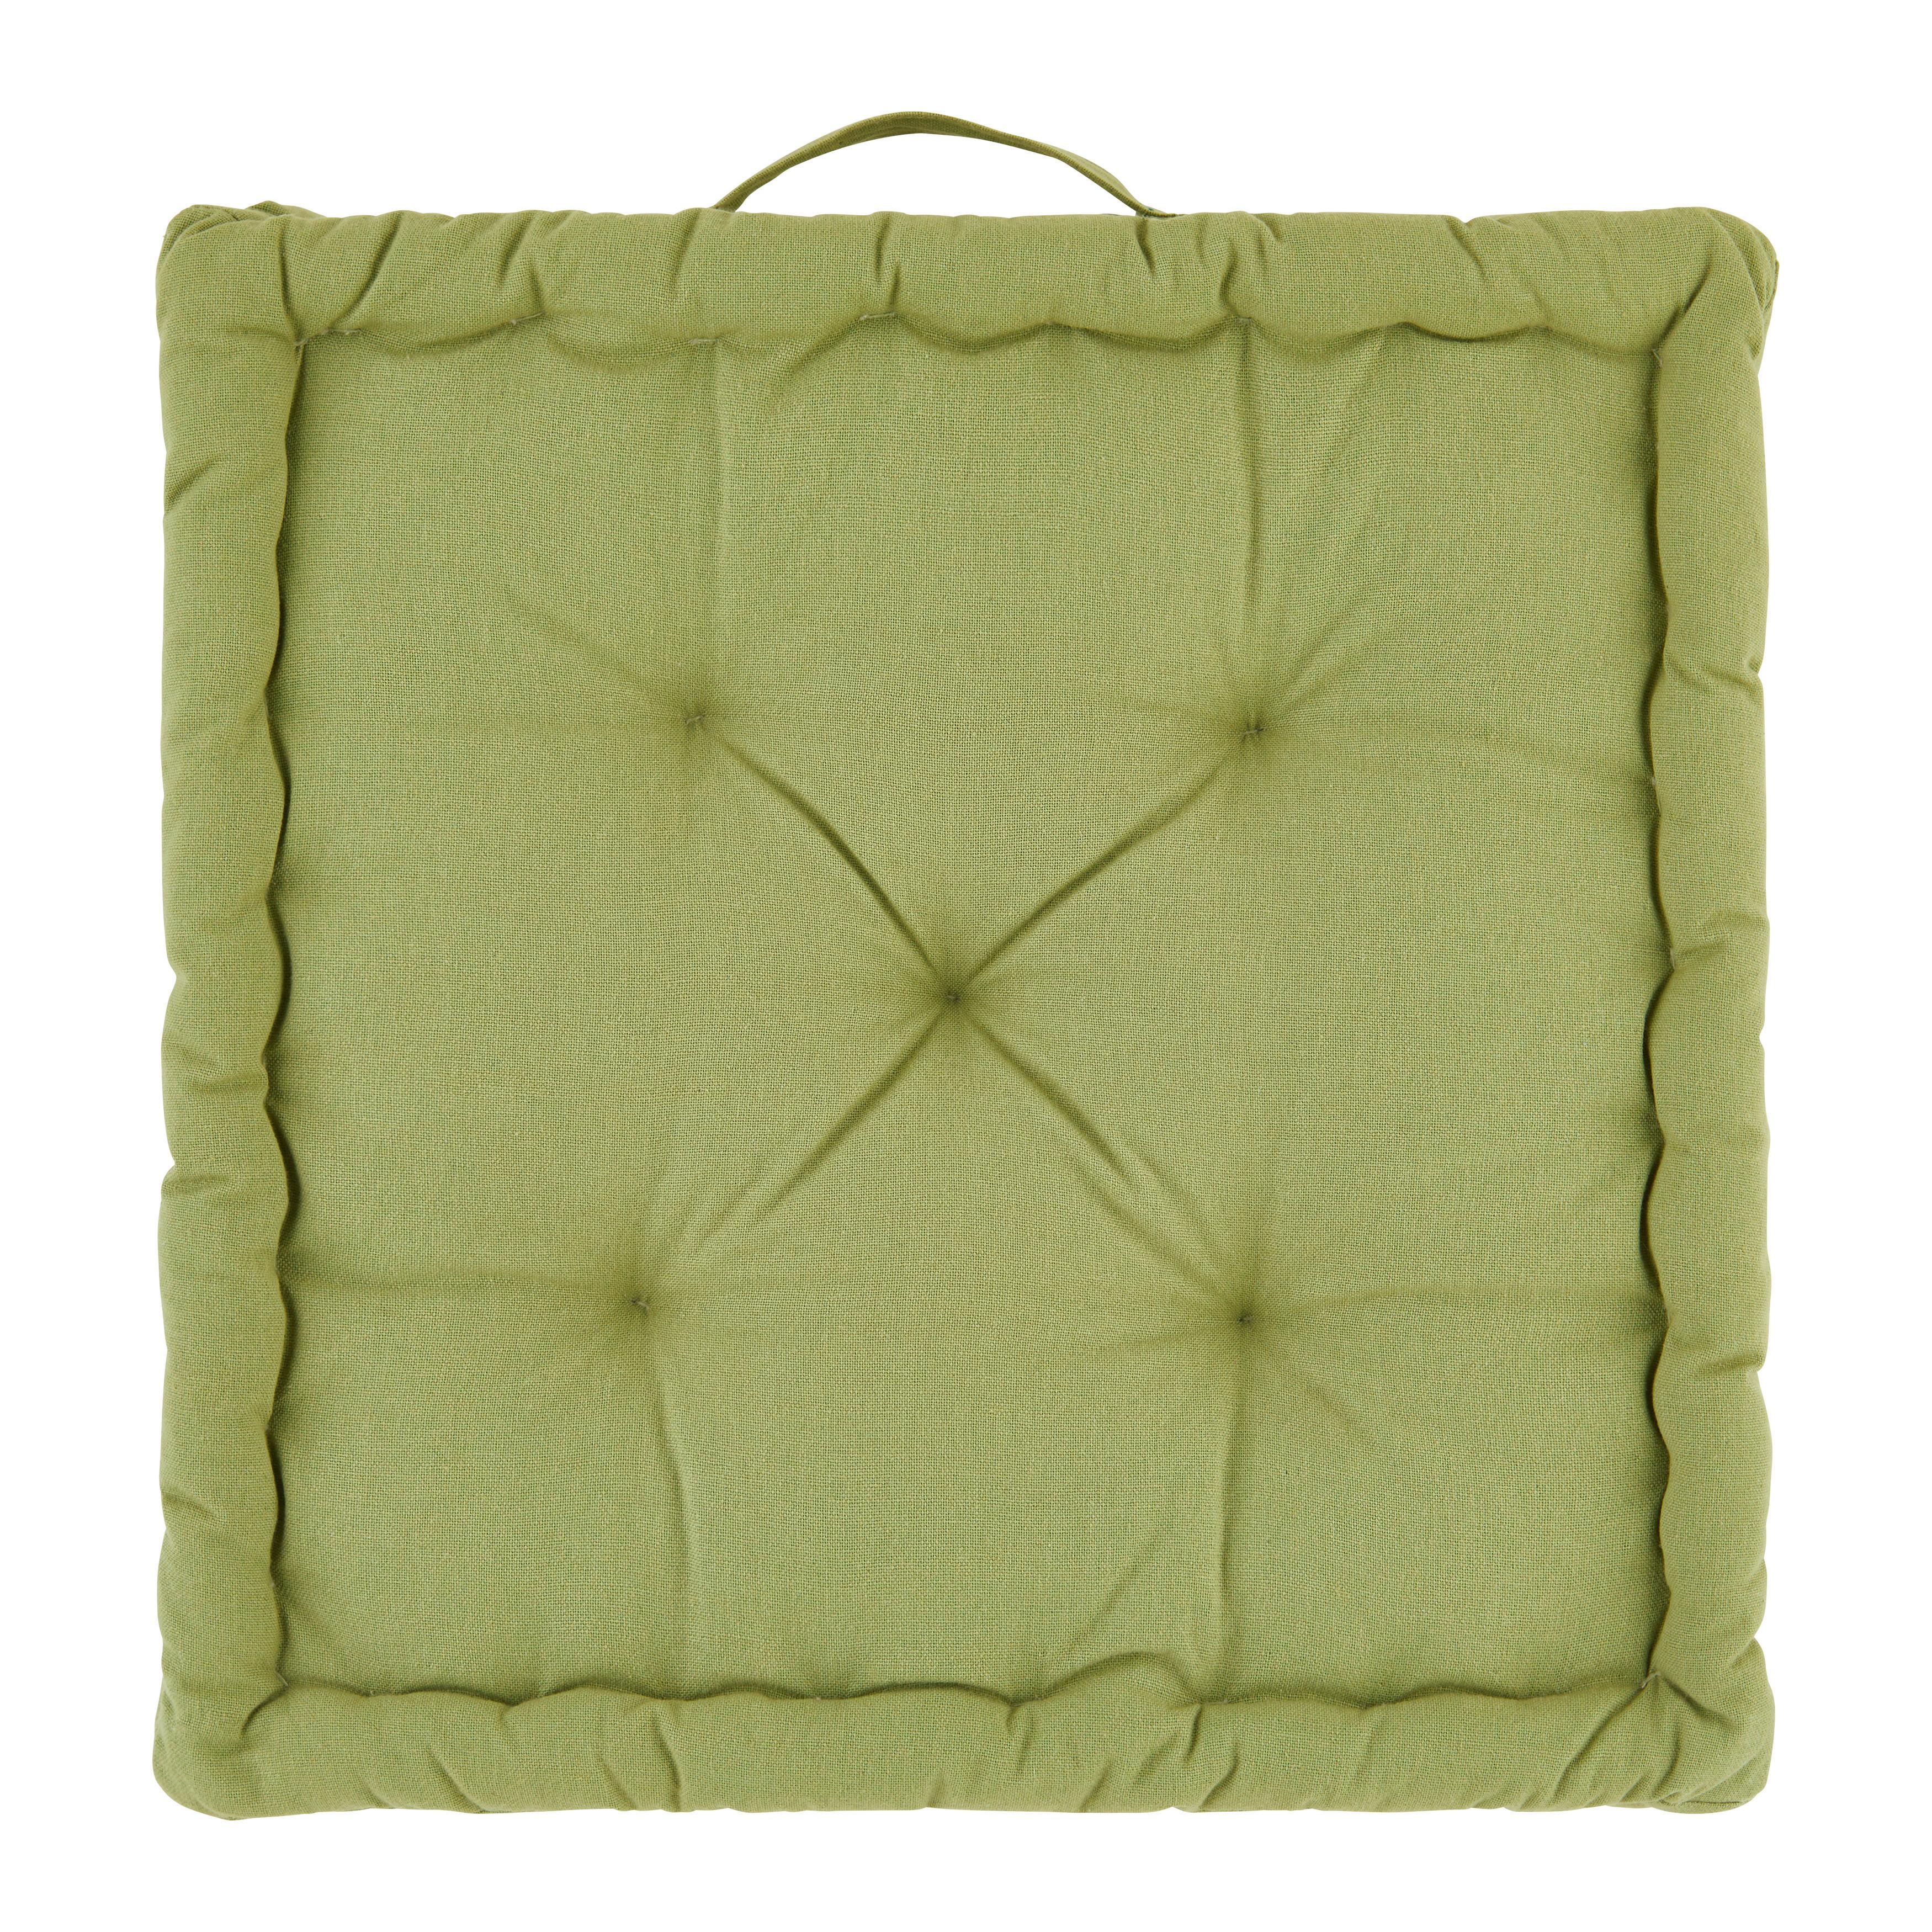 Polštář Na Box Bo, 40/40/6cm, Zelená - zelená, textil (40/40/6cm) - Modern Living